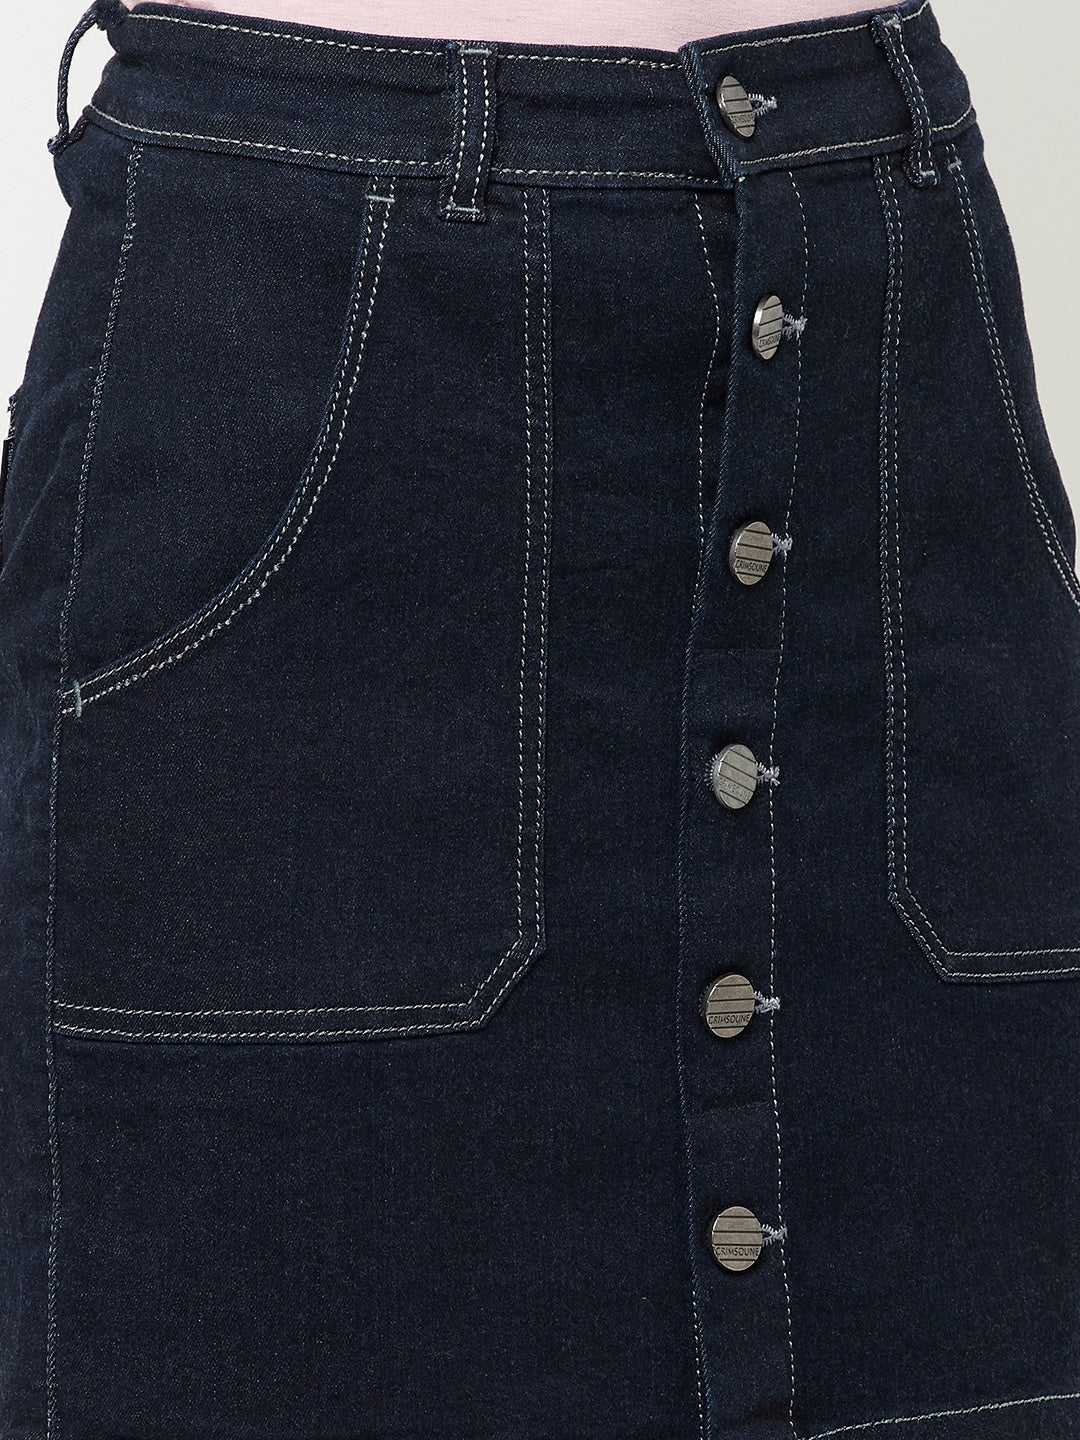 Navy Blue Mini Denim Skirt - Women Skirts